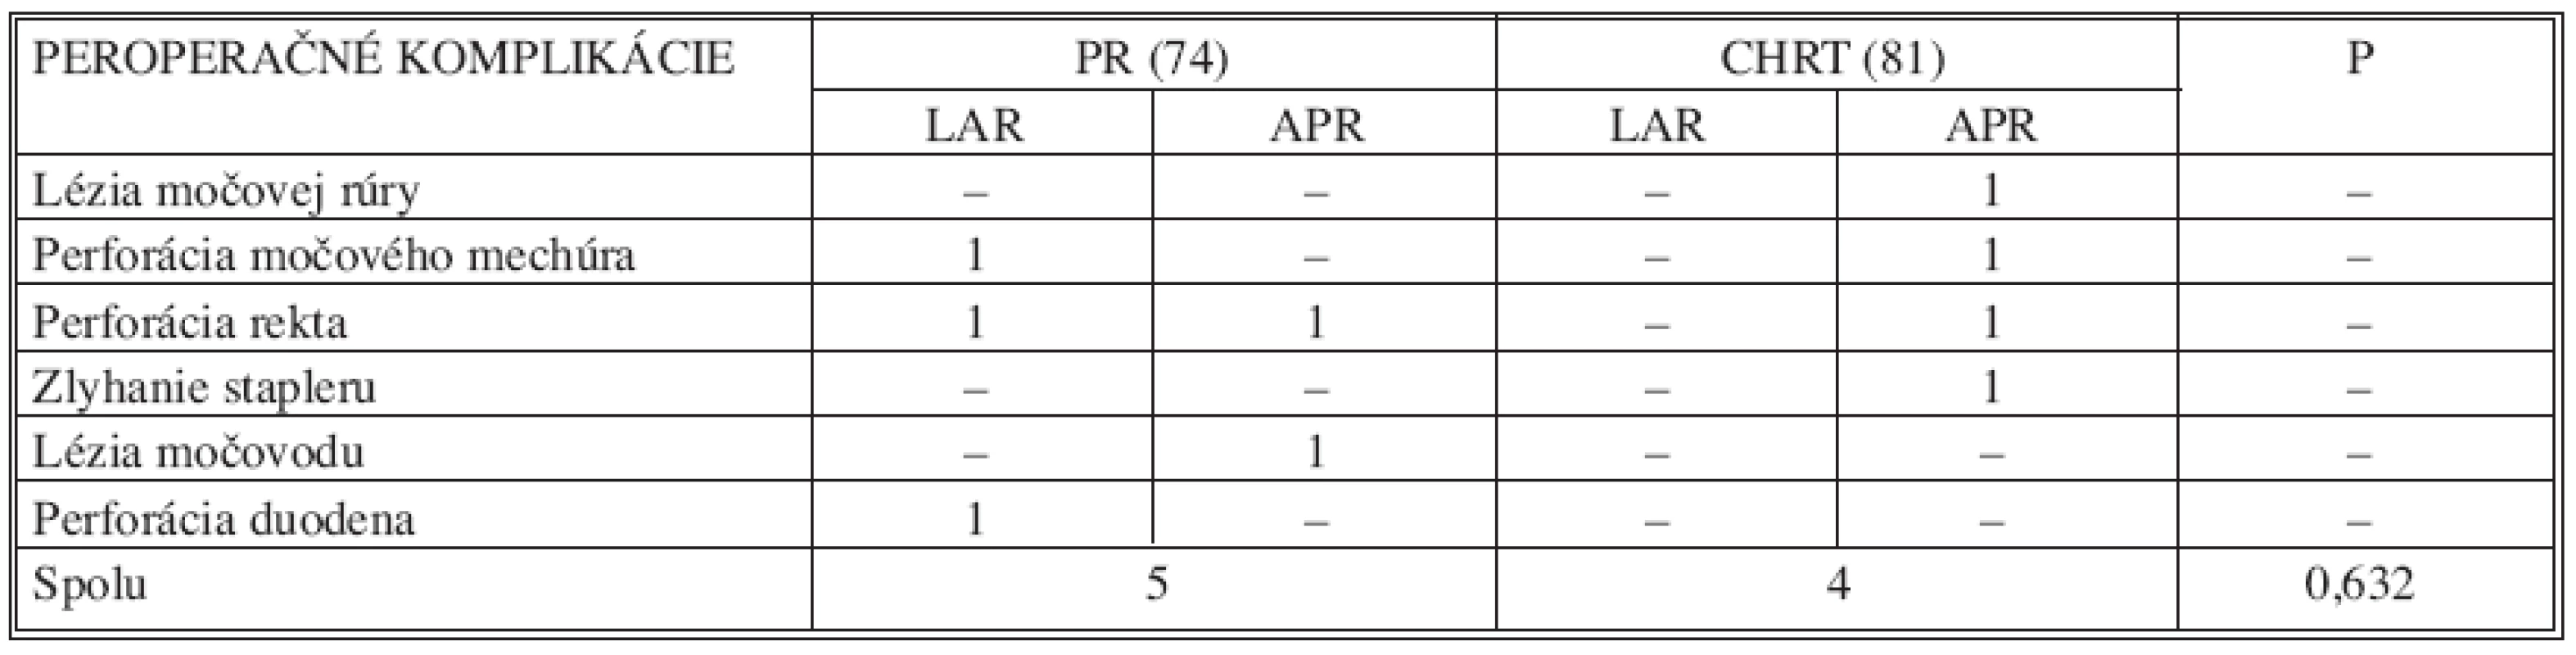 Porovnanie výskytu peroperačných komplikácií v súbore pacientov (n=155)
Tab. 7. Assessment of intraoperative complications rates in the subject group (n=155)